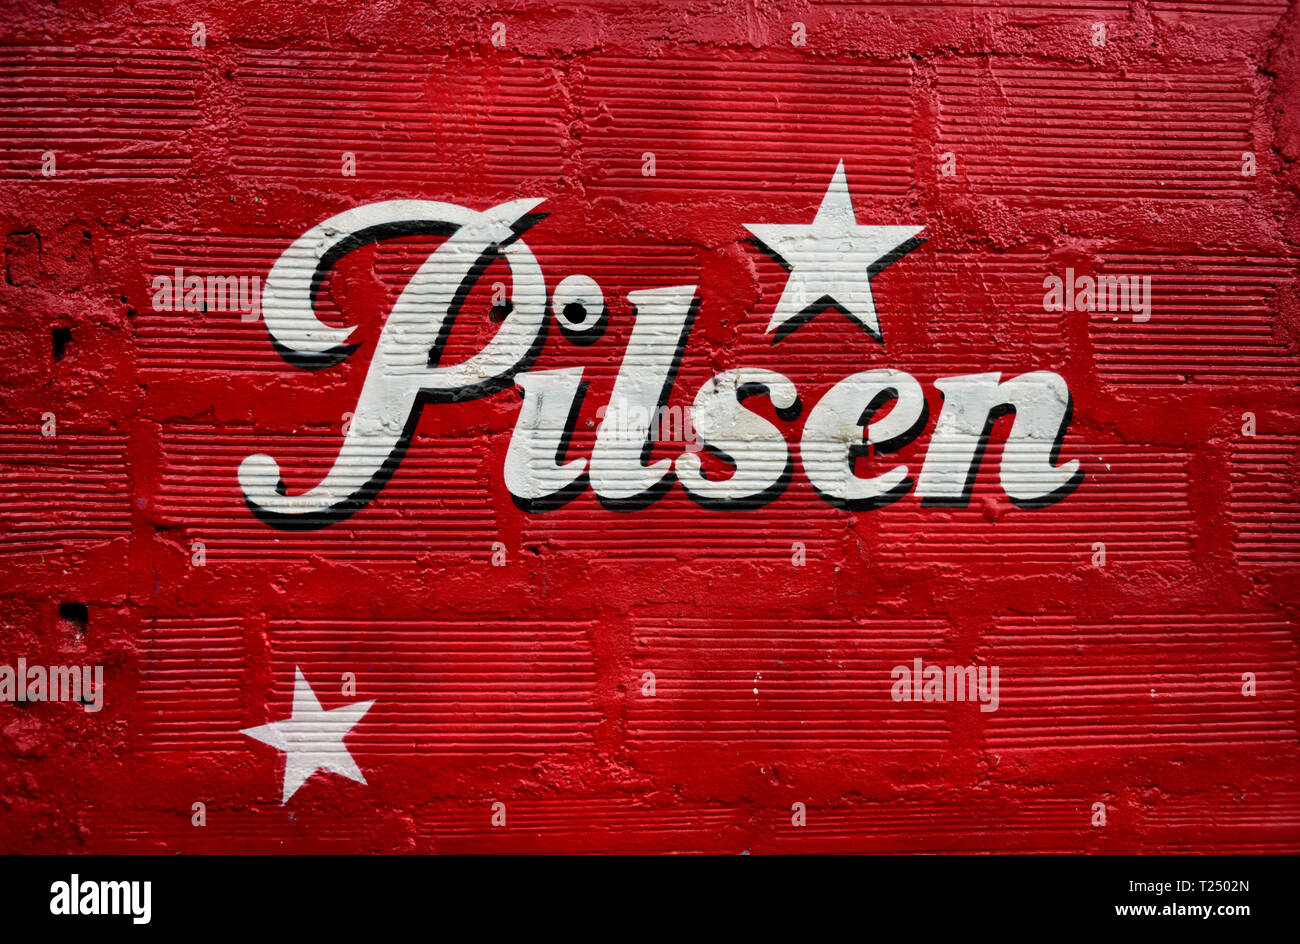 Brassé par Grupo Empresarial Bavaria depuis 1909, Pilsen est la marque leader dans la région d'Antioquia en Colombie, en Amérique du Sud. Banque D'Images